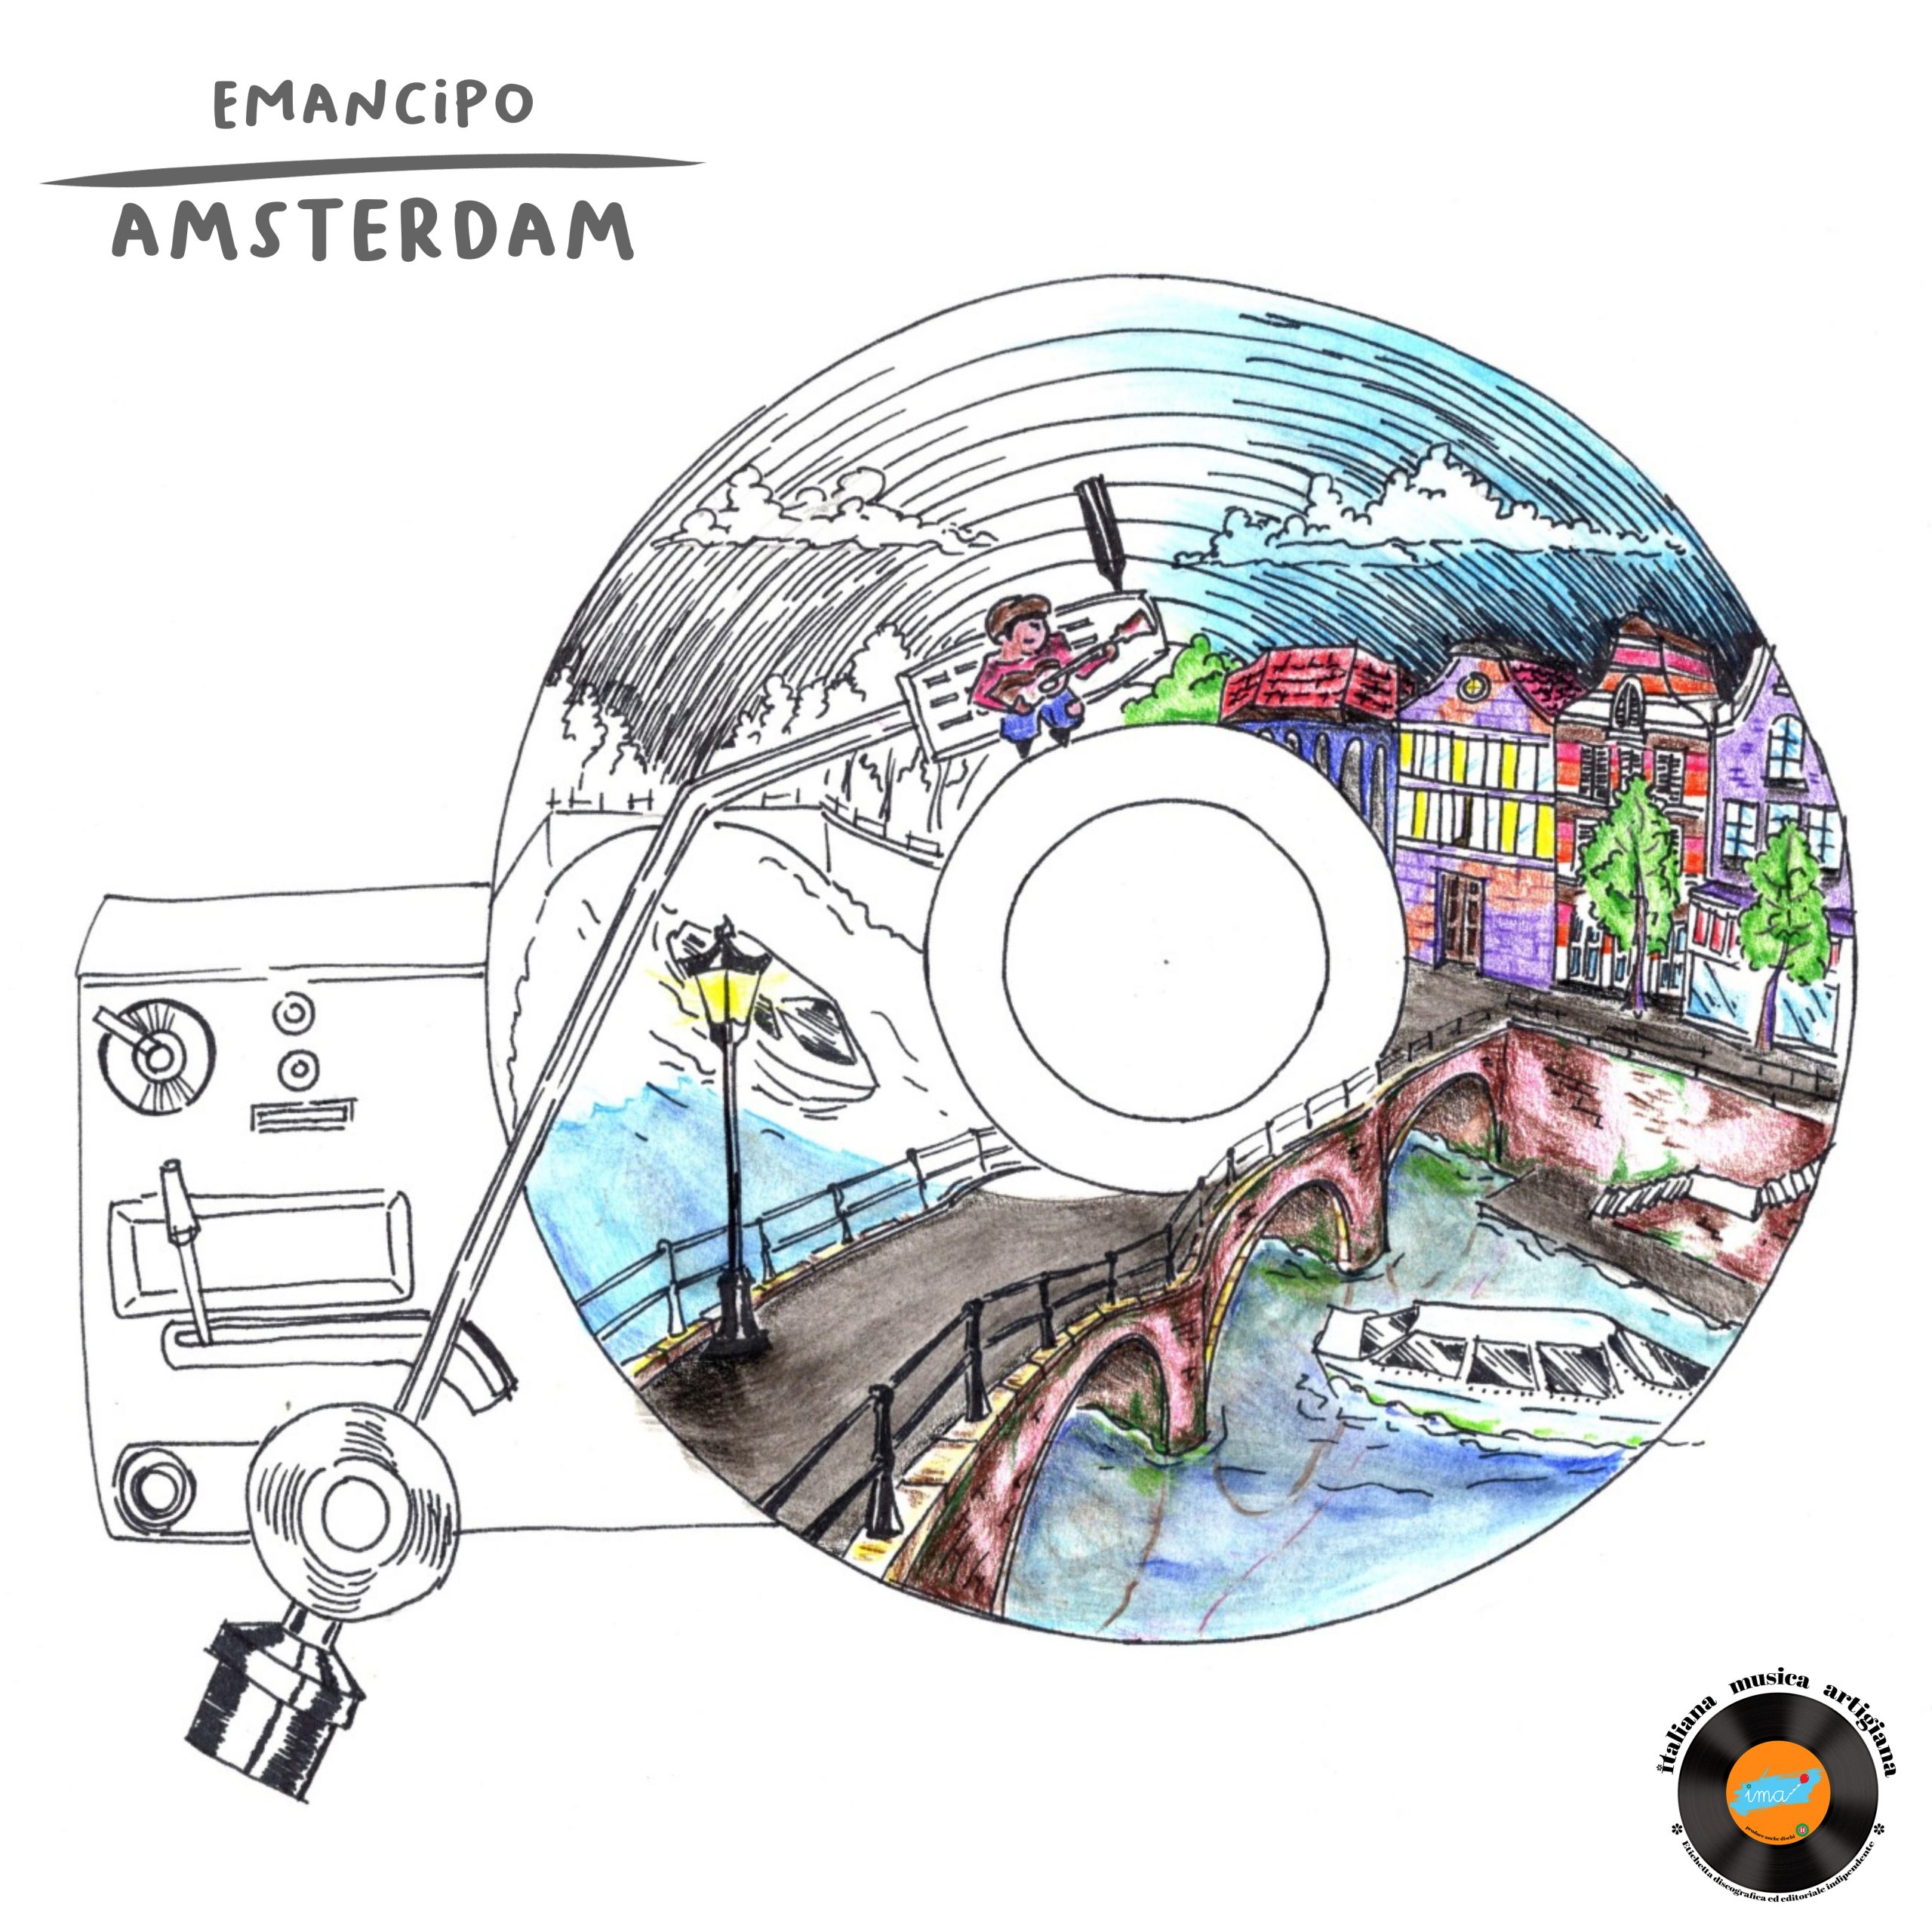 Emancipo, venerdì 15 aprile esce in radio il nuovo singolo “Amsterdam”